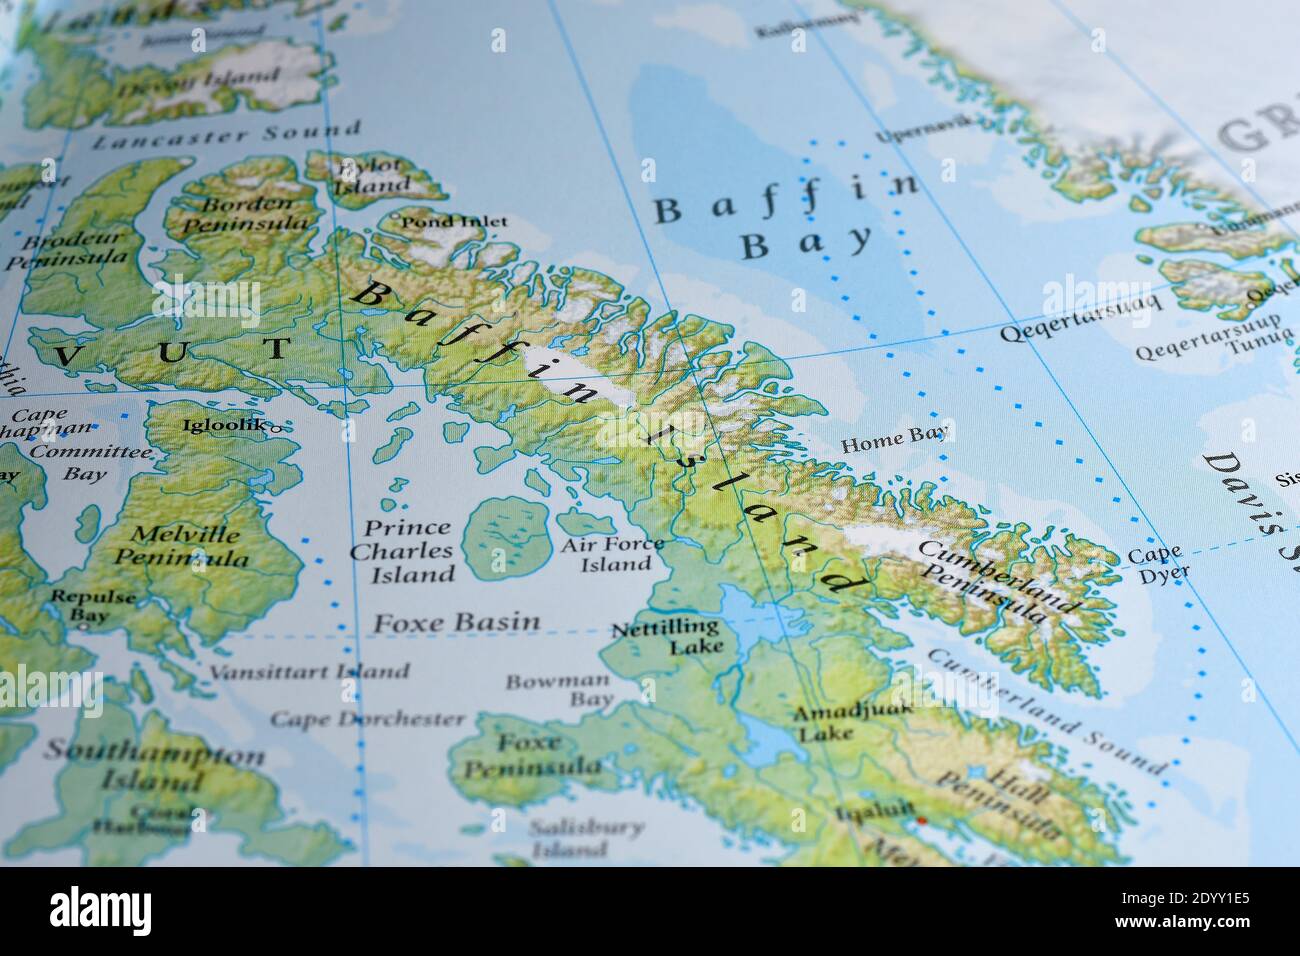 Baffin Island Map 2DYY1E5 